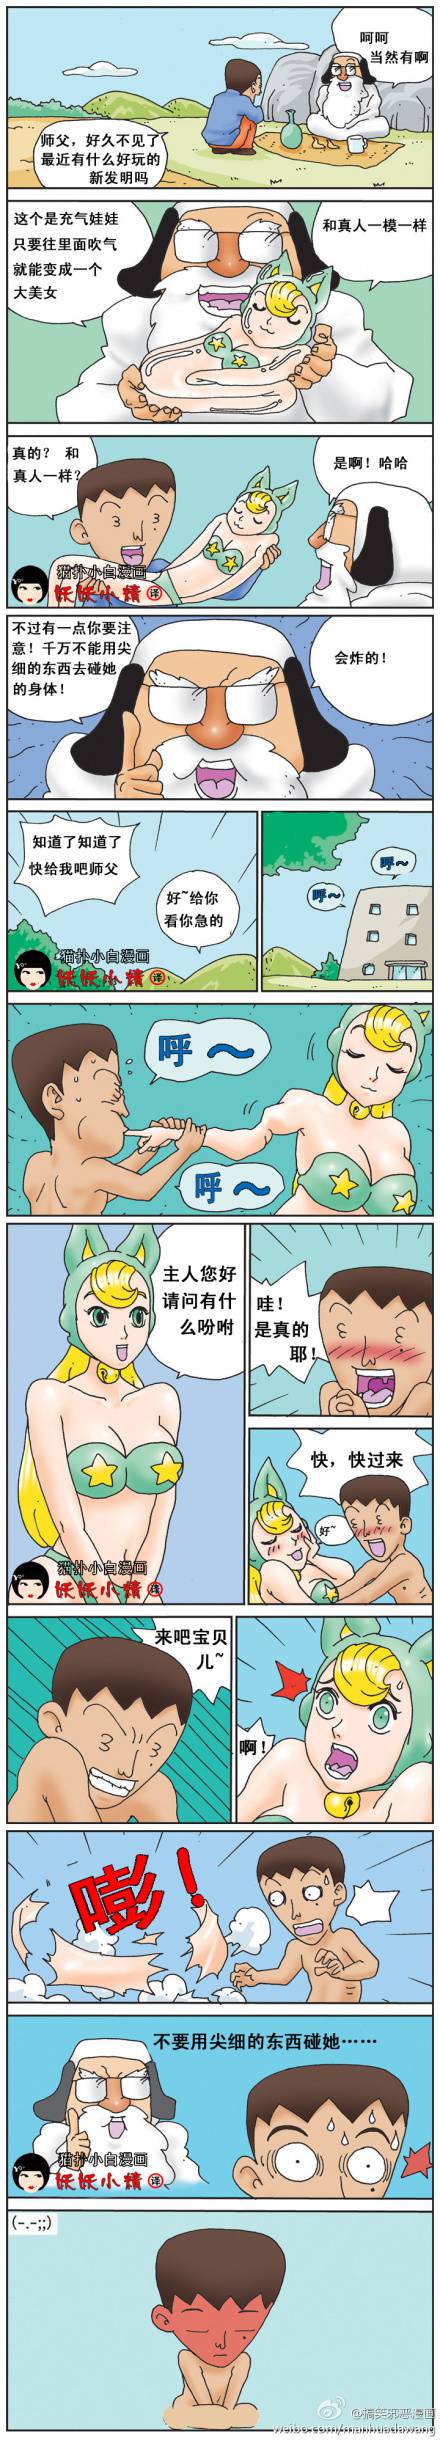 邪恶漫画爆笑囧图第19刊：阿童木的发现